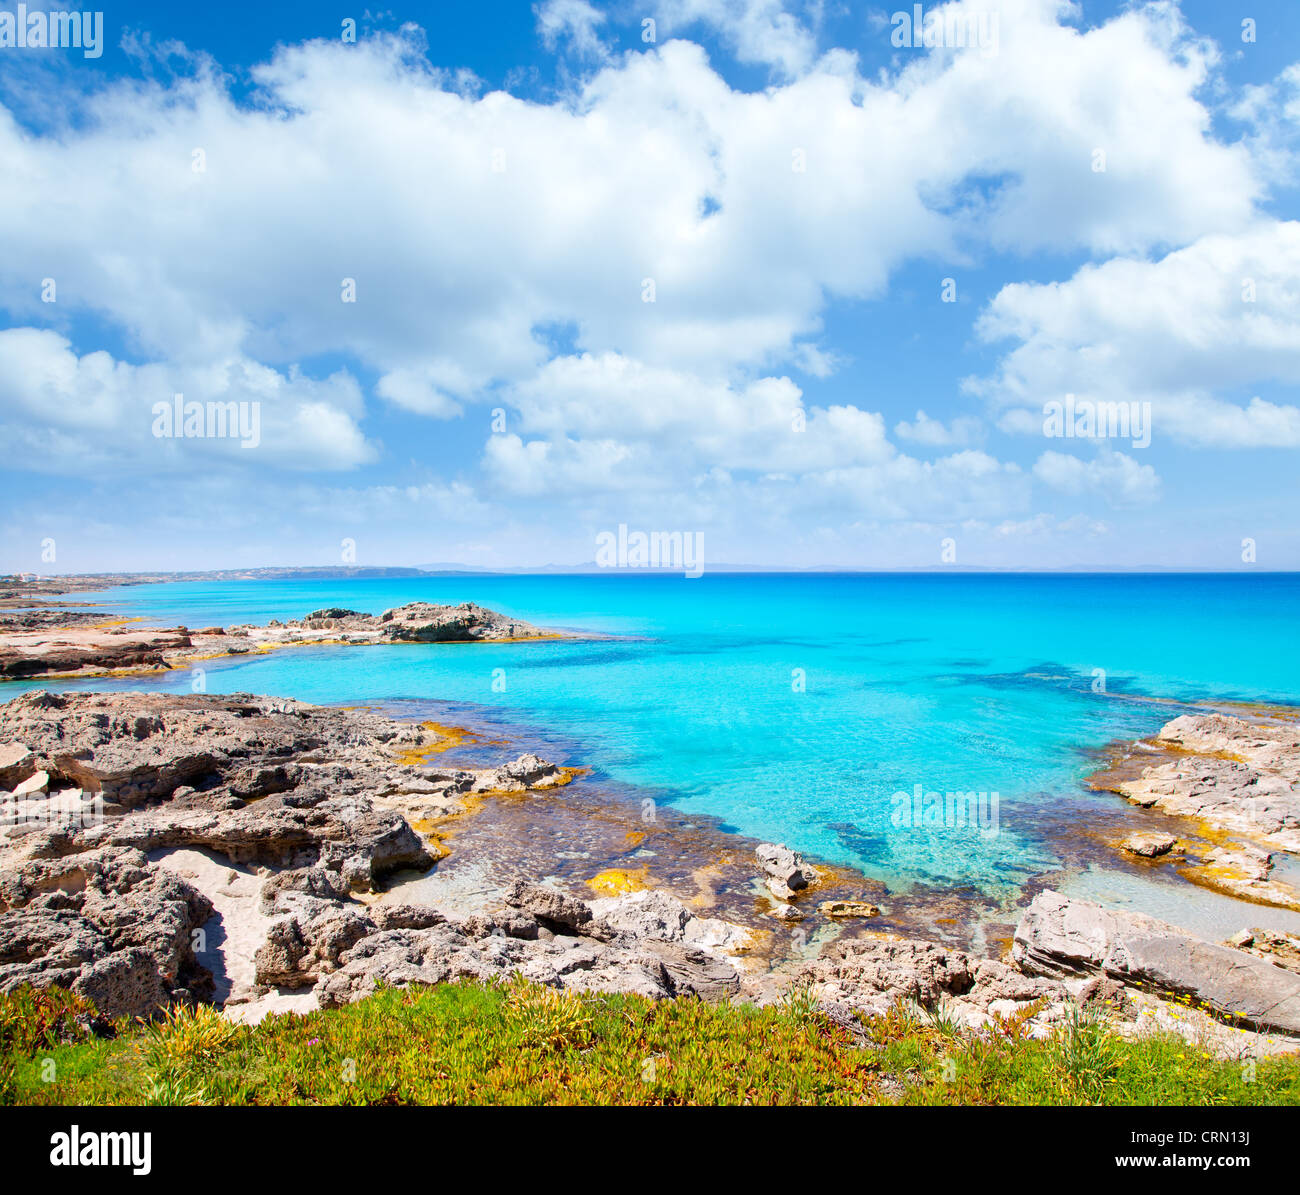 Formentera, isla balear en escalo playa rocosa y el mar turquesa Foto de stock